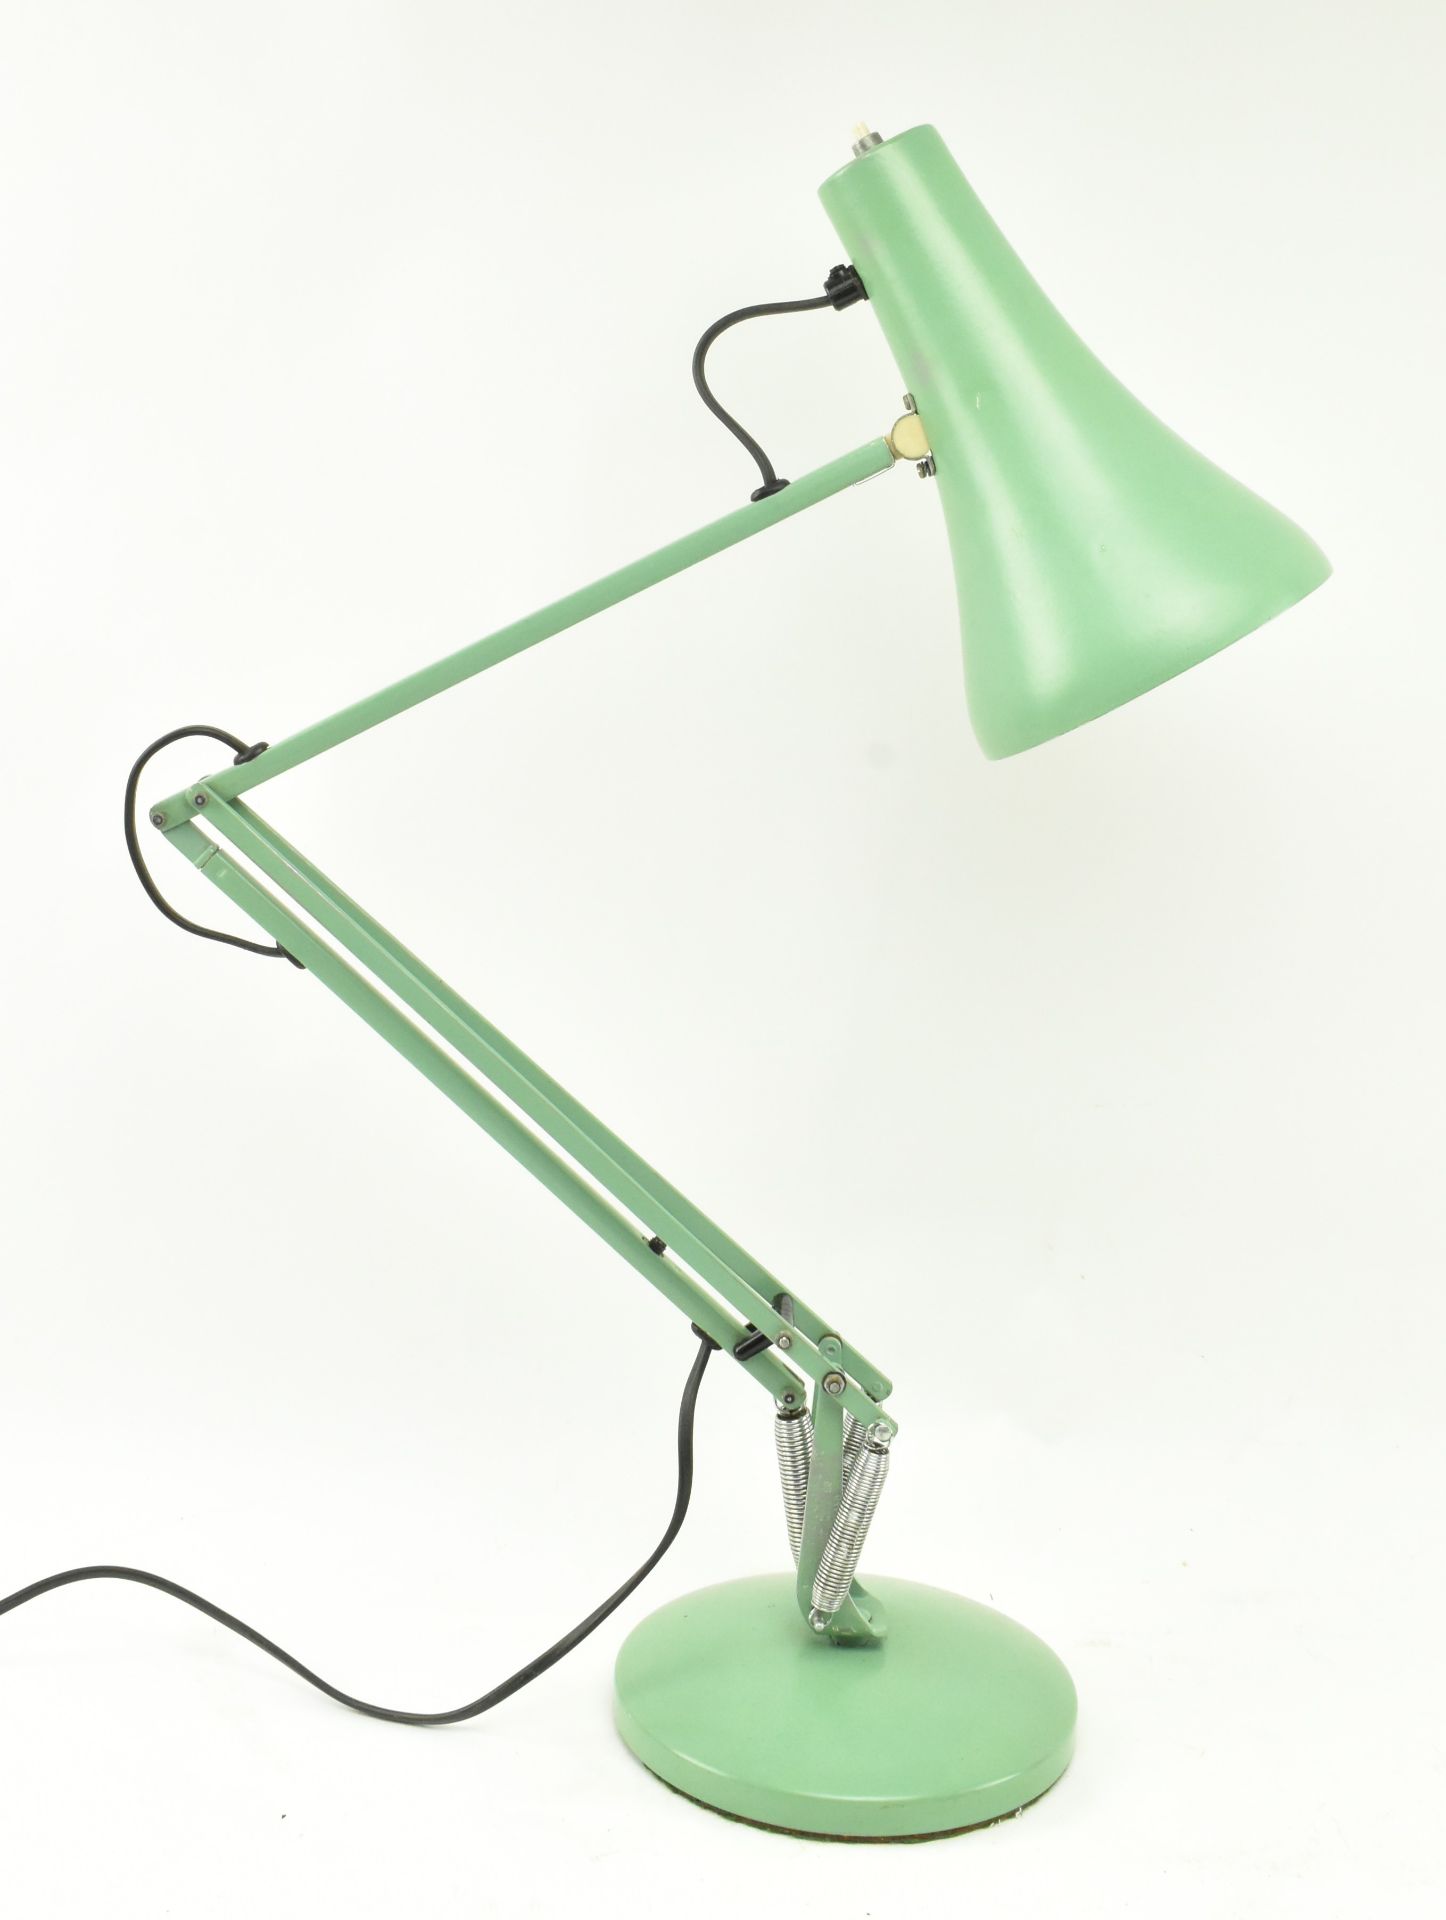 HERBERT TERRY - MODEL 90 - RETRO ANGLEPOISE DESK LAMP